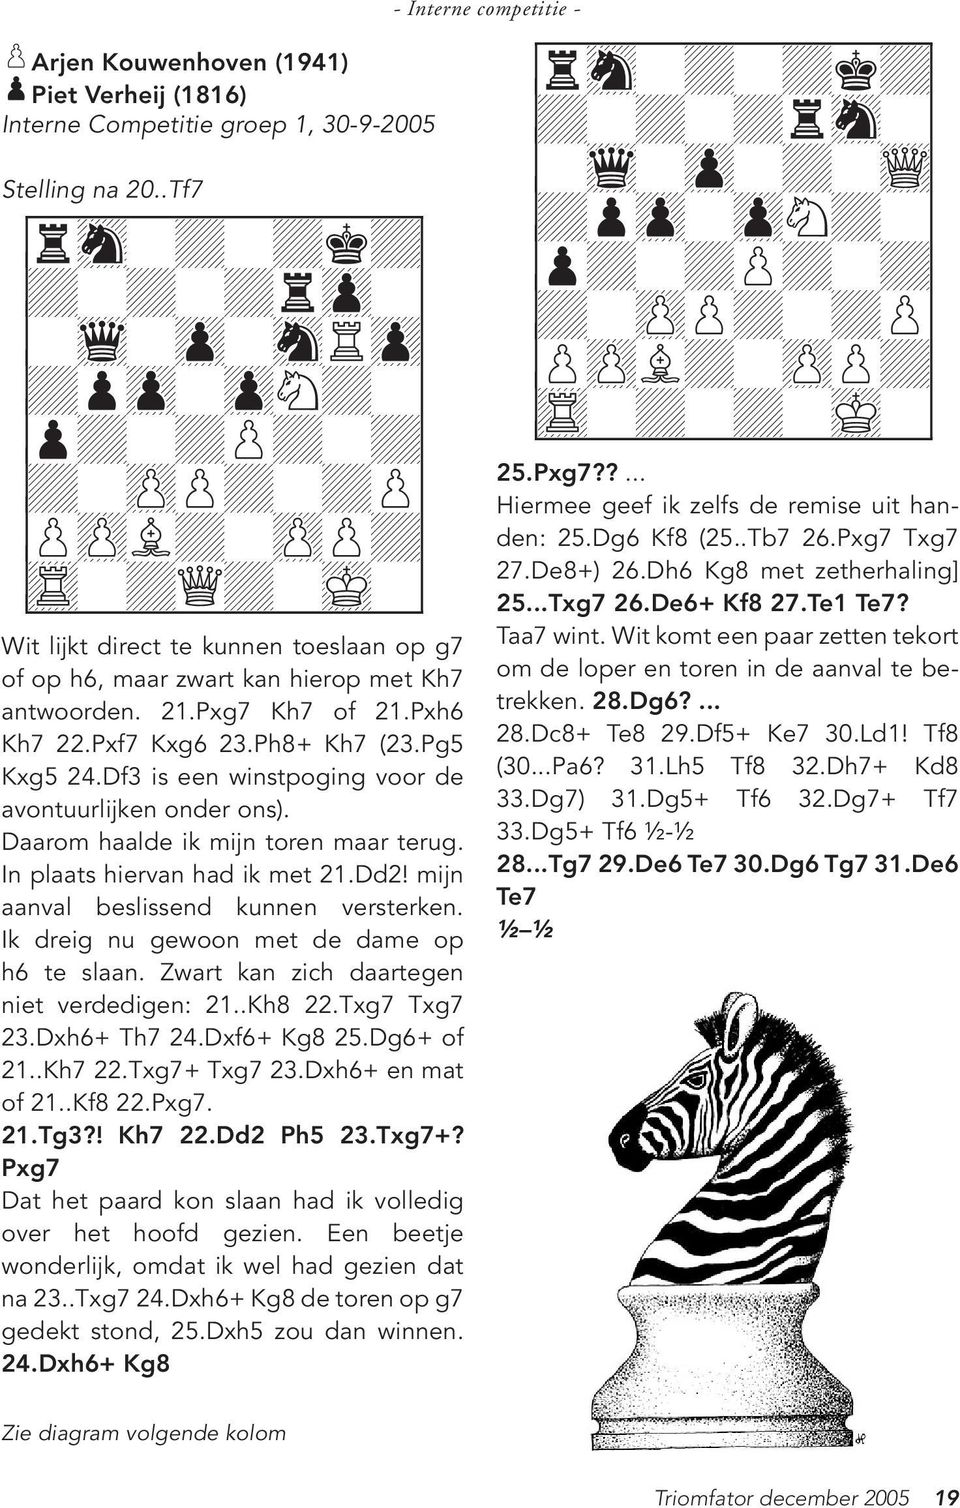 mijn aanval beslissend kunnen versterken. Ik dreig nu gewoon met de dame op h6 te slaan. Zwart kan zich daartegen niet verdedigen: 21..Kh8 22.Txg7 Txg7 23.Dxh6+ Th7 24.Dxf6+ Kg8 25.Dg6+ of 21..Kh7 22.